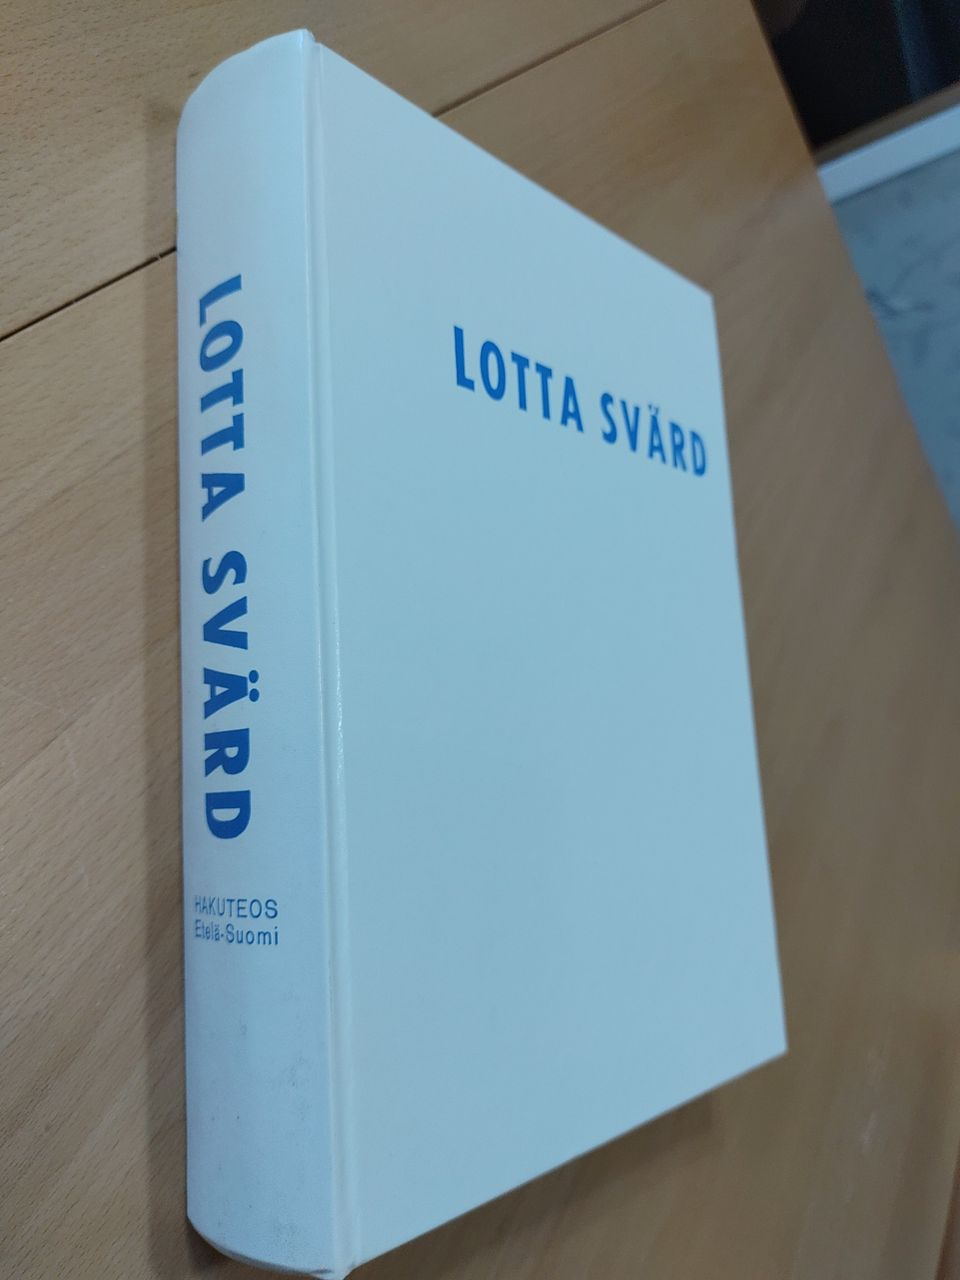 Lotta Svärd hakuteos v. 1973 Etelä-Suomi